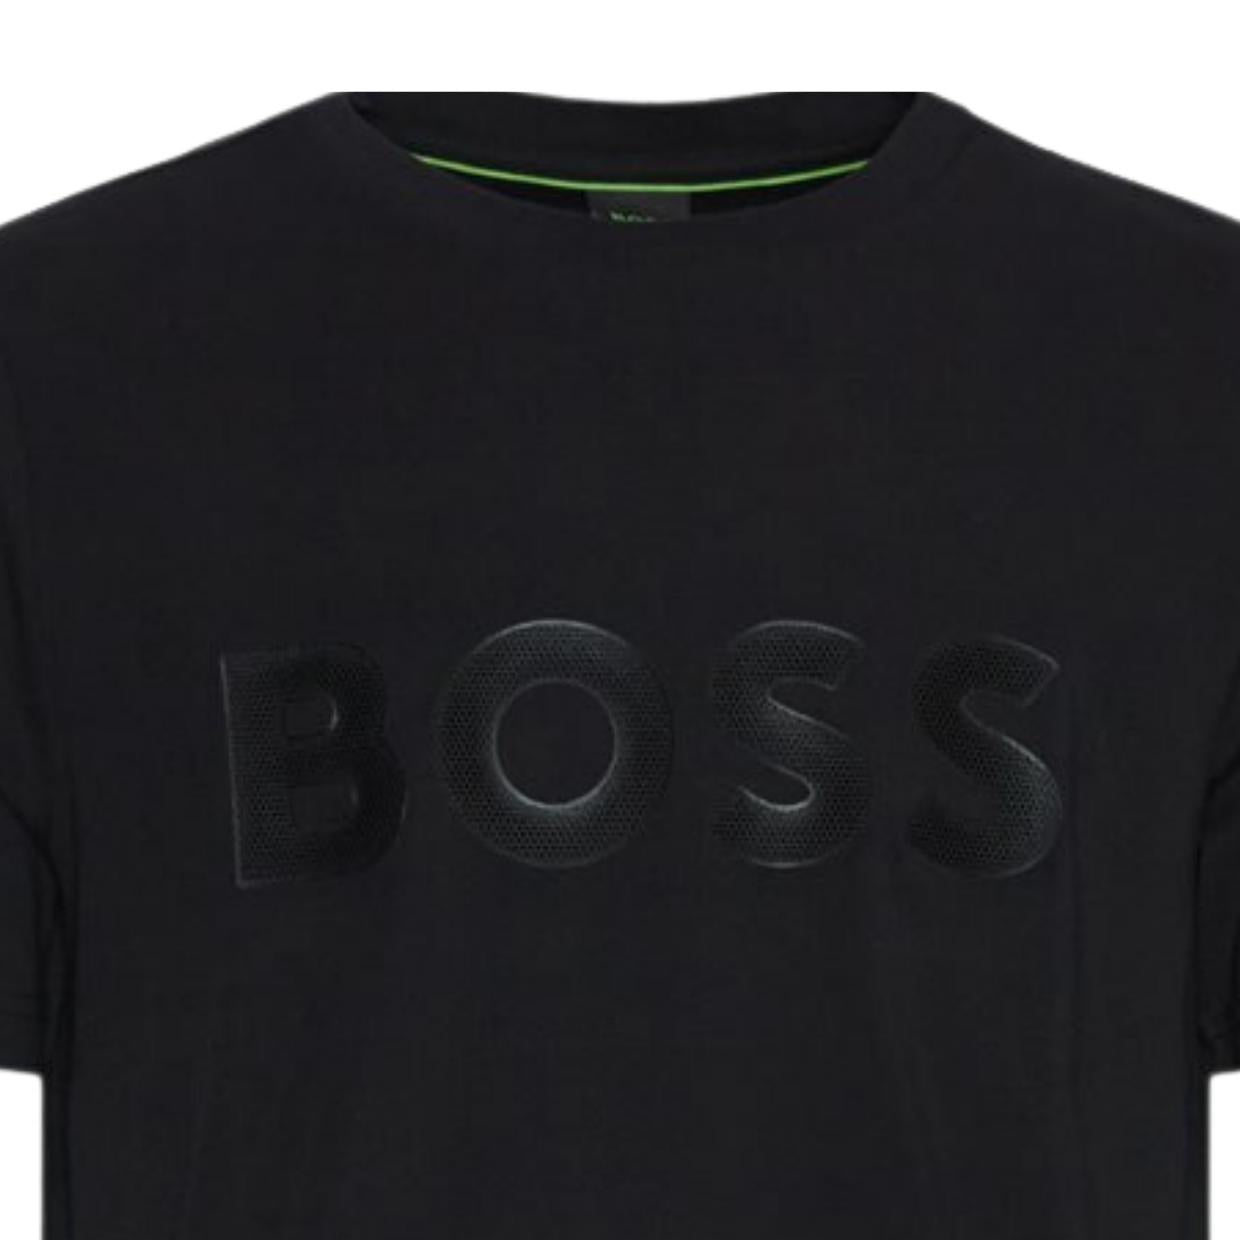 BOSS Regular fit Mesh Effect Logo Black T-Shirt